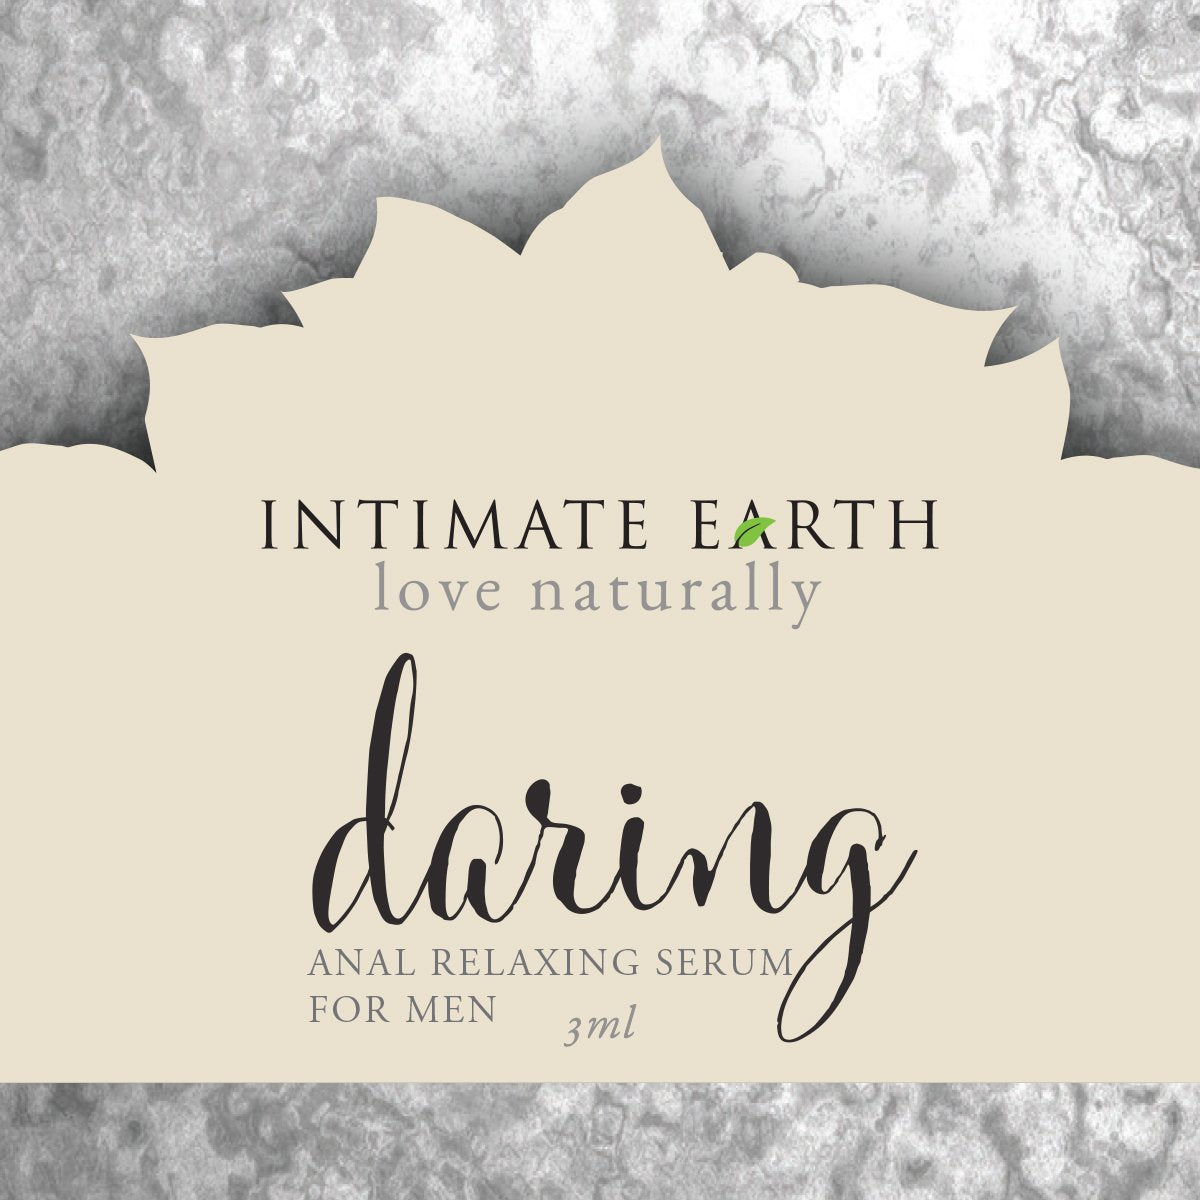 Intimate Earth Daring Anal Relaxing Serum For Men - 3ml